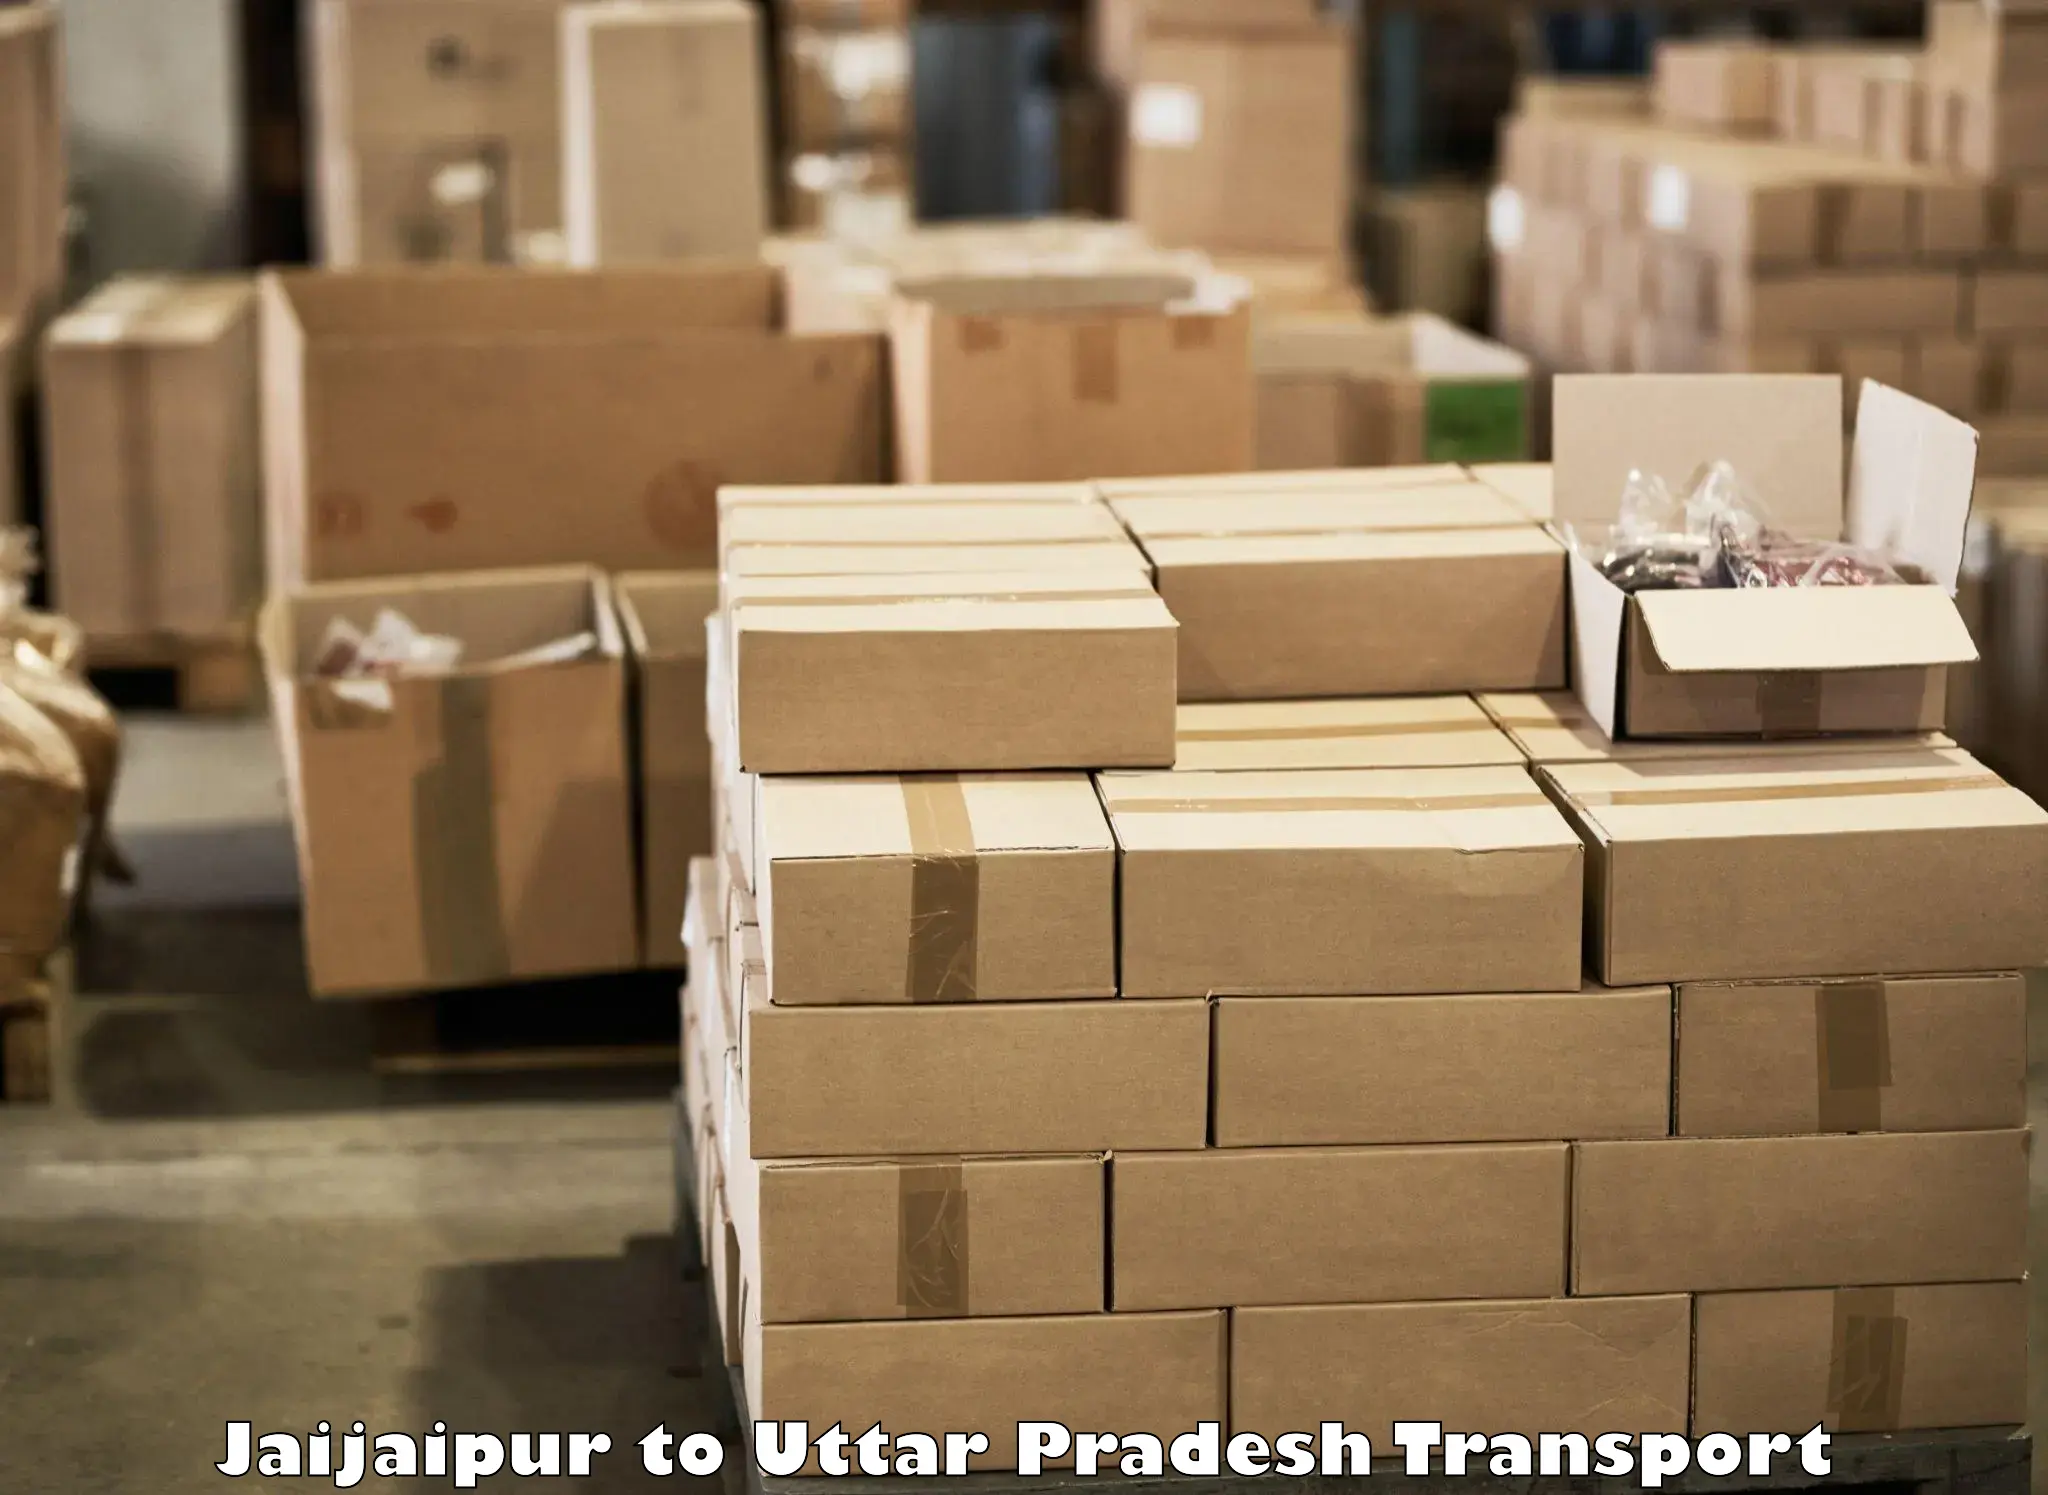 Truck transport companies in India Jaijaipur to Ganj Dundwara